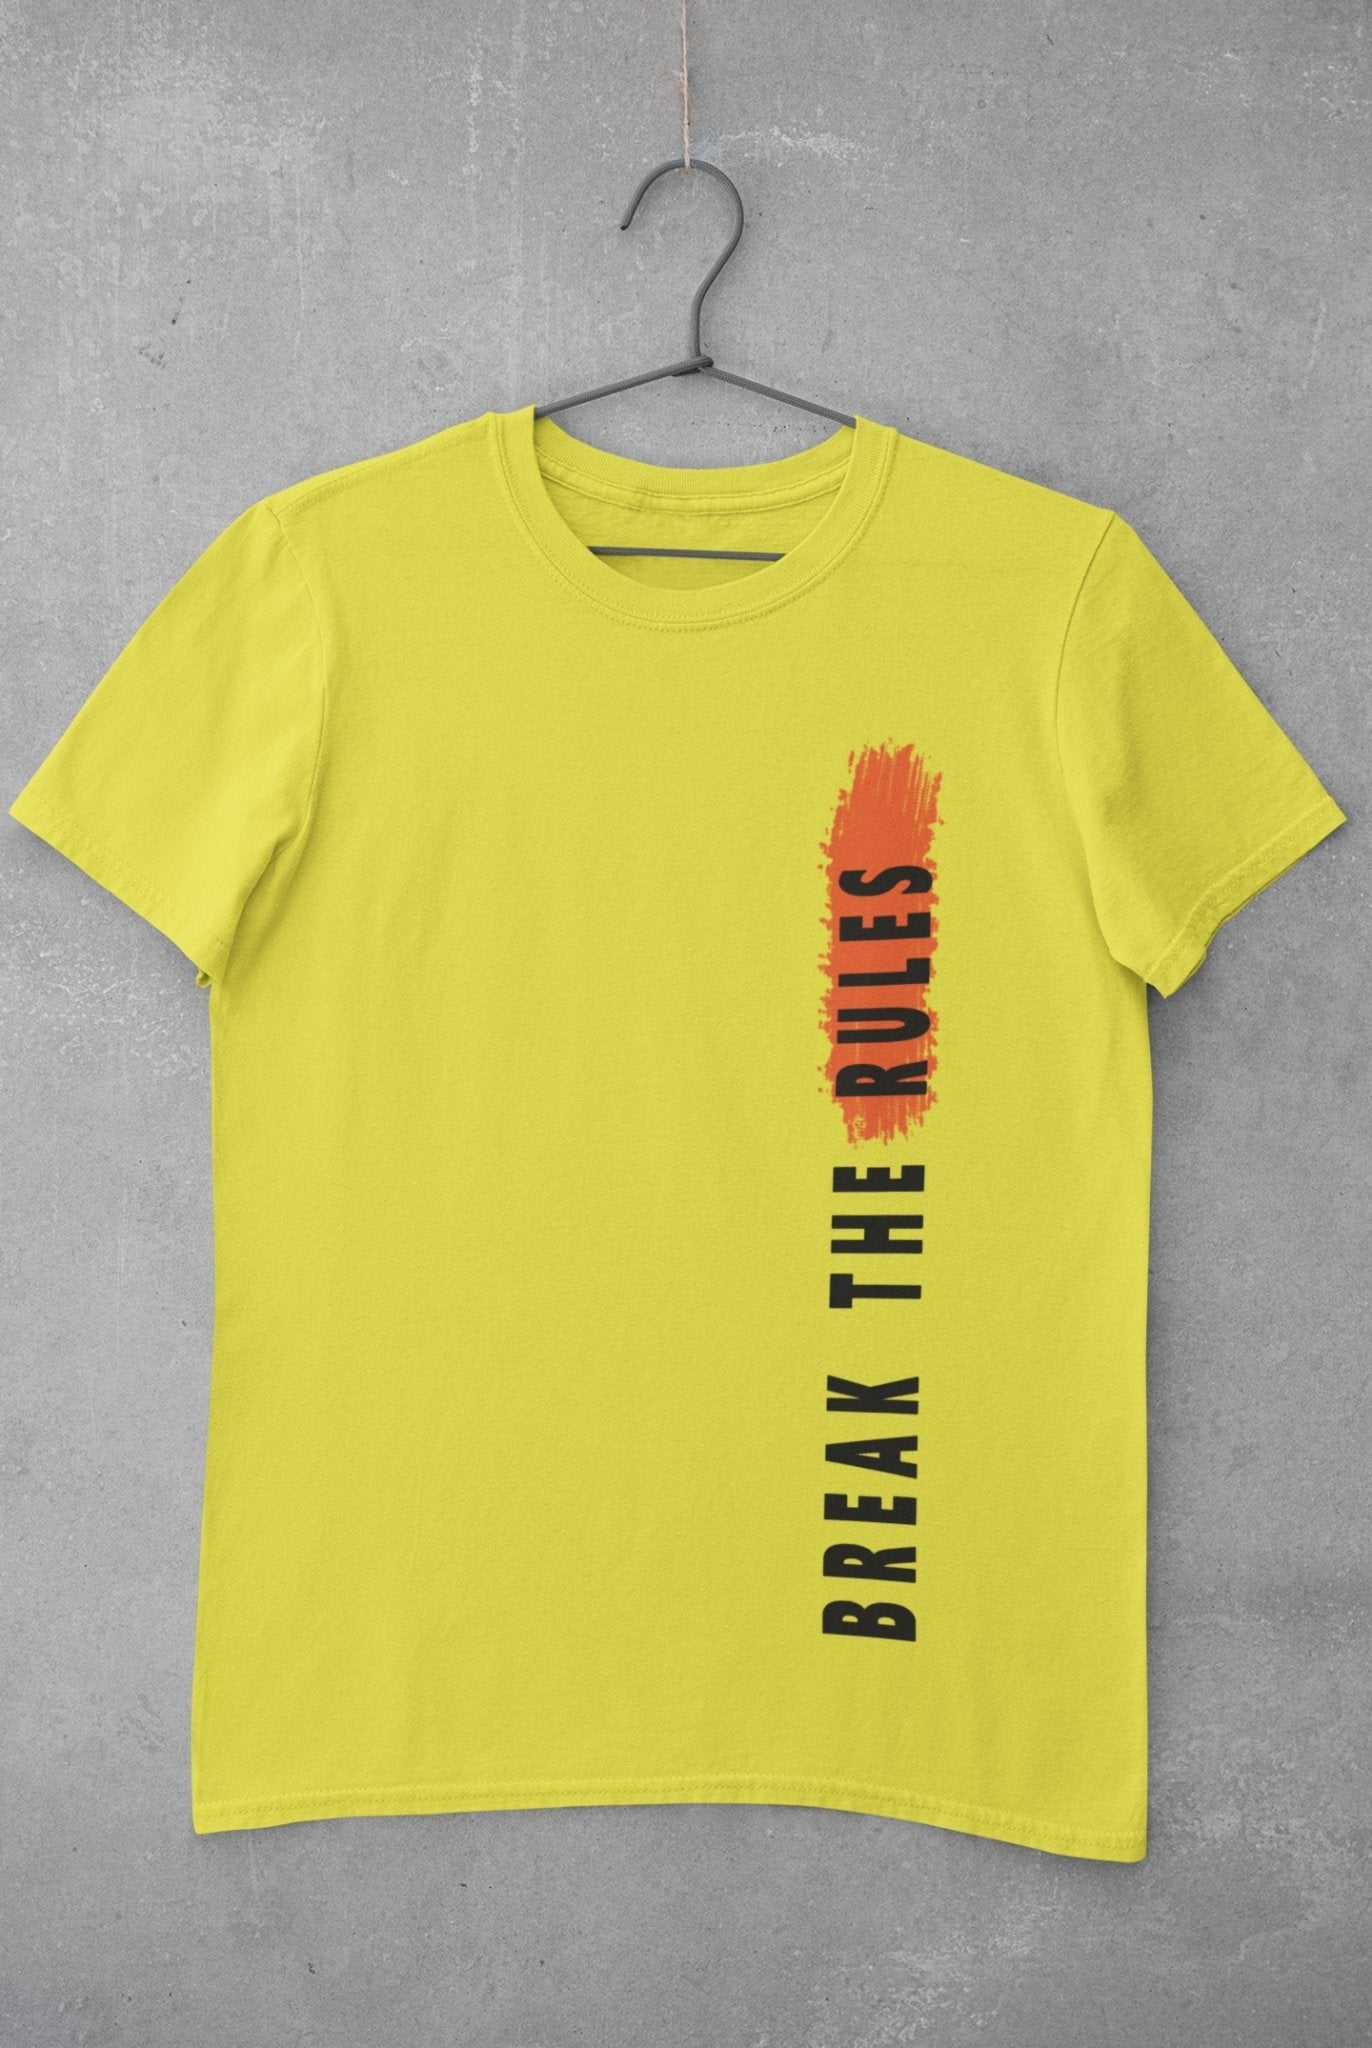 Break The Rules Mens Half Sleeves T-shirt- FunkyTeesClub - Funky Tees Club